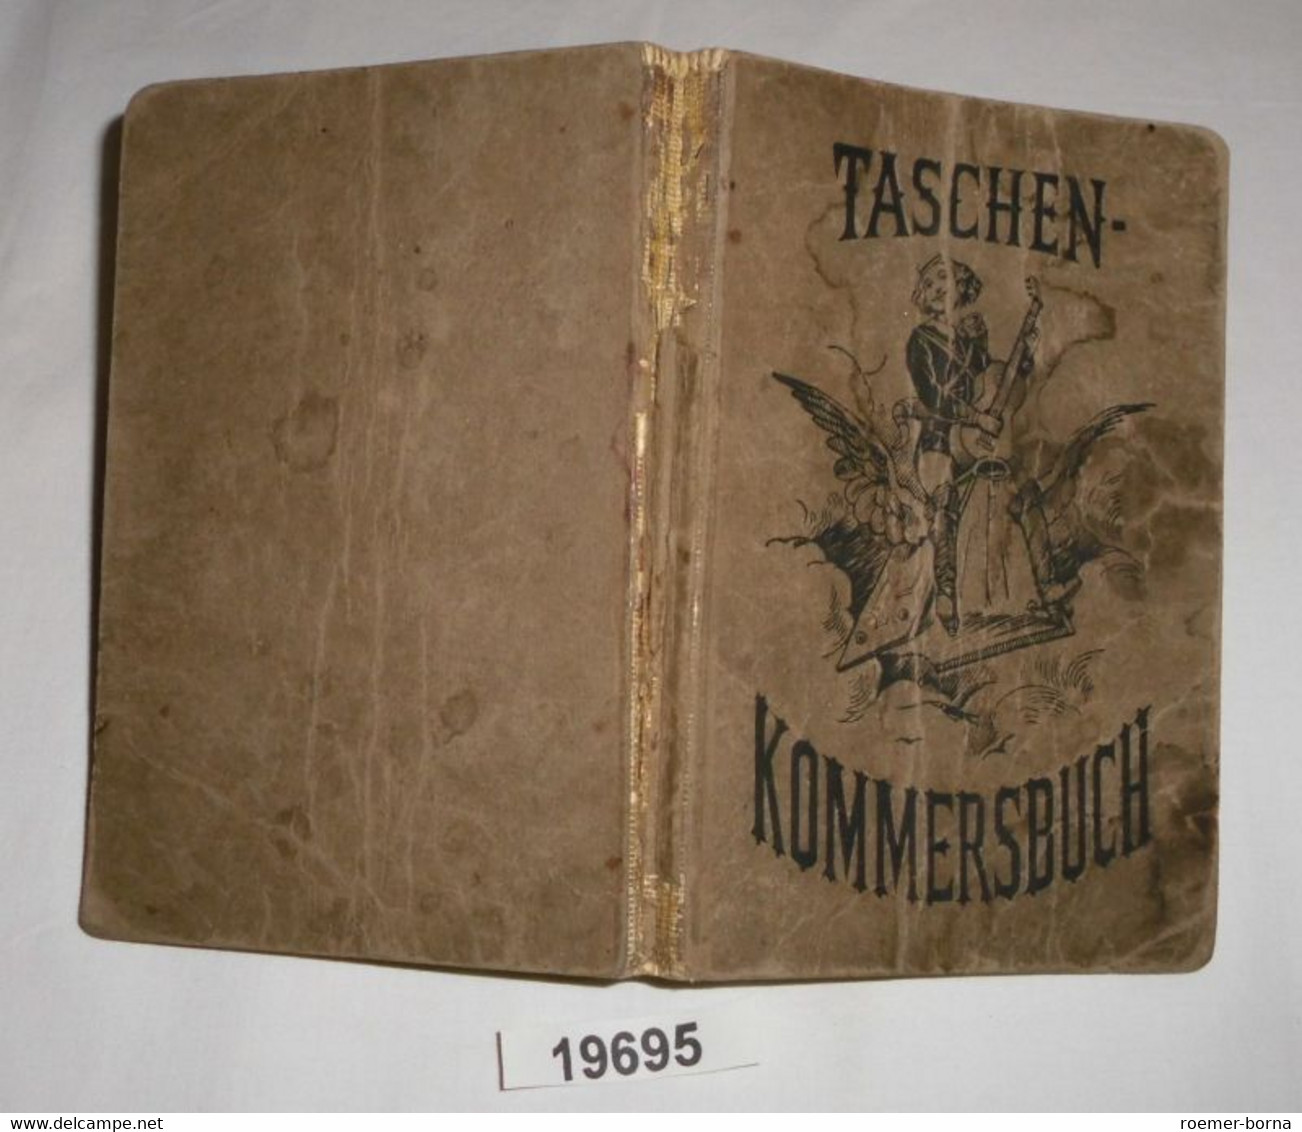 Taschen-Kommersbuch (Taschenkommersbuch) - Vierhundert Lieder Aus Schauenburgs Allgemeinem Deutschen Kommersbuch - Music